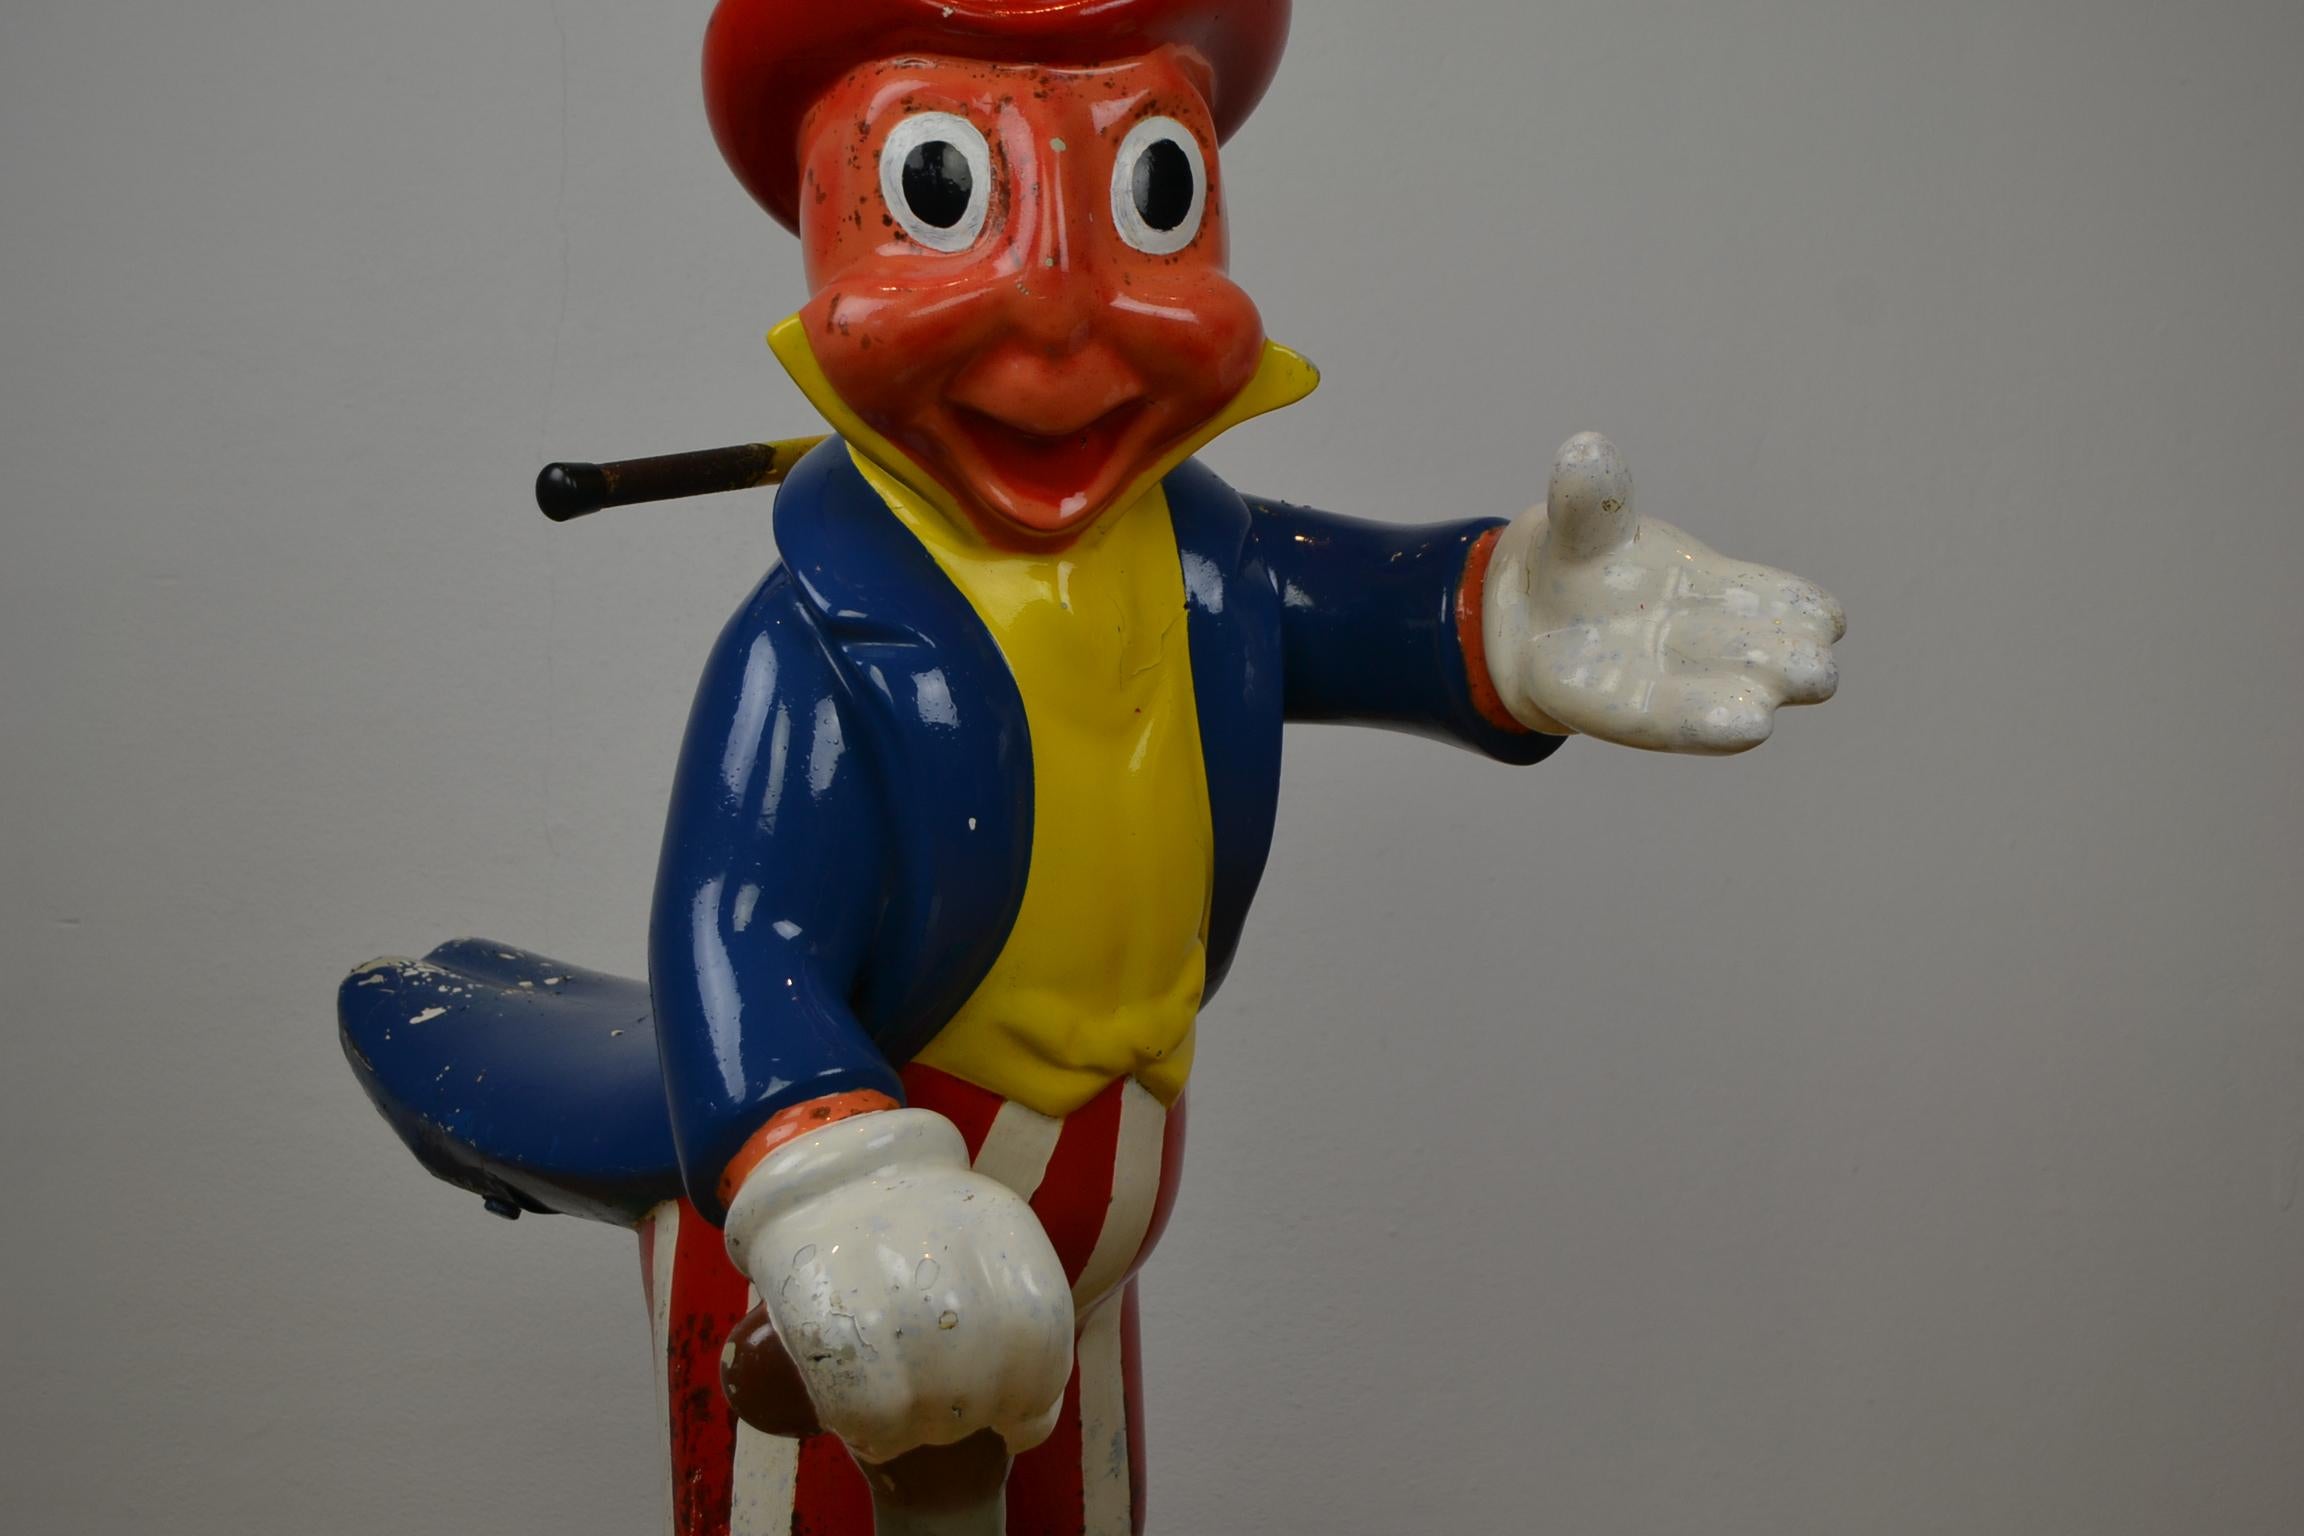 European Vintage Fairground Jiminy Cricket Figurine on Iron Swing, Mid-20th Century